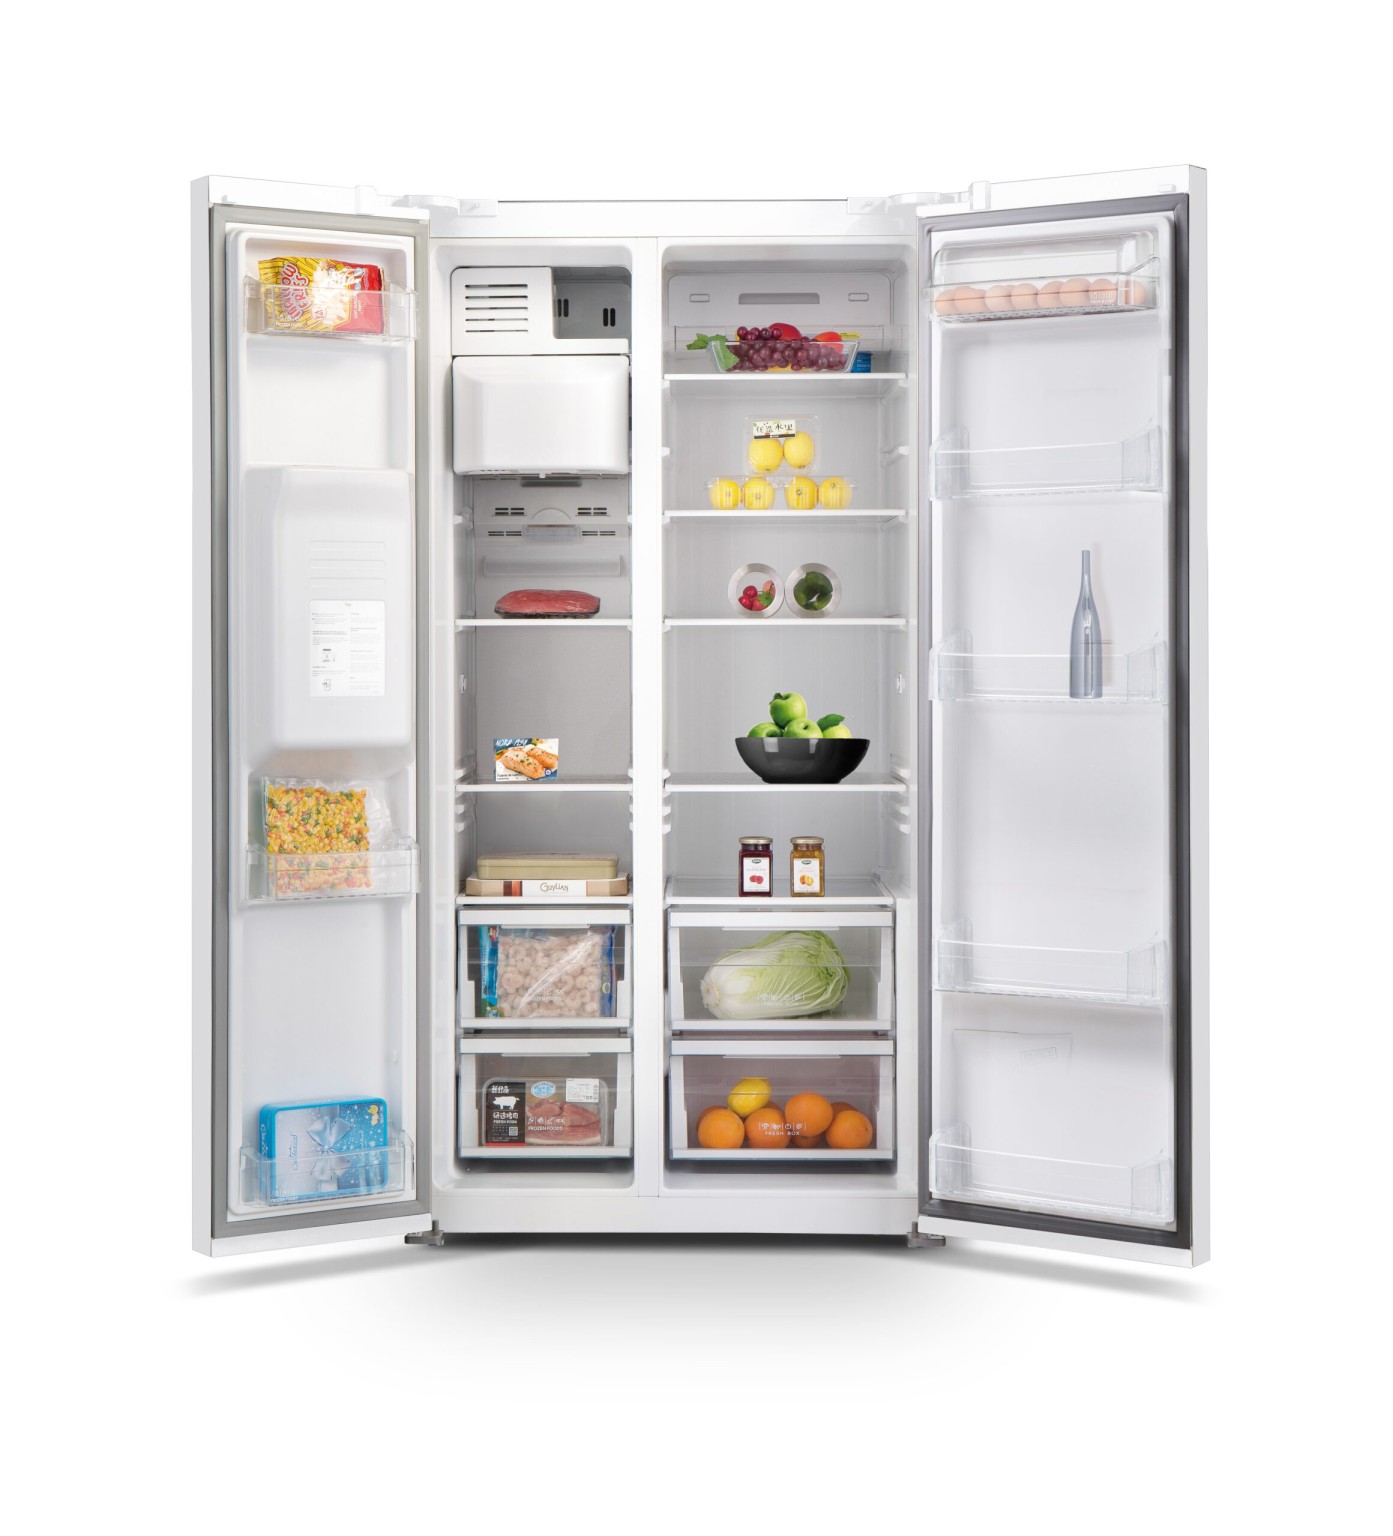 Réfrigérateur américain No Frost 556 L verre blanc - SCUS550NFGLW